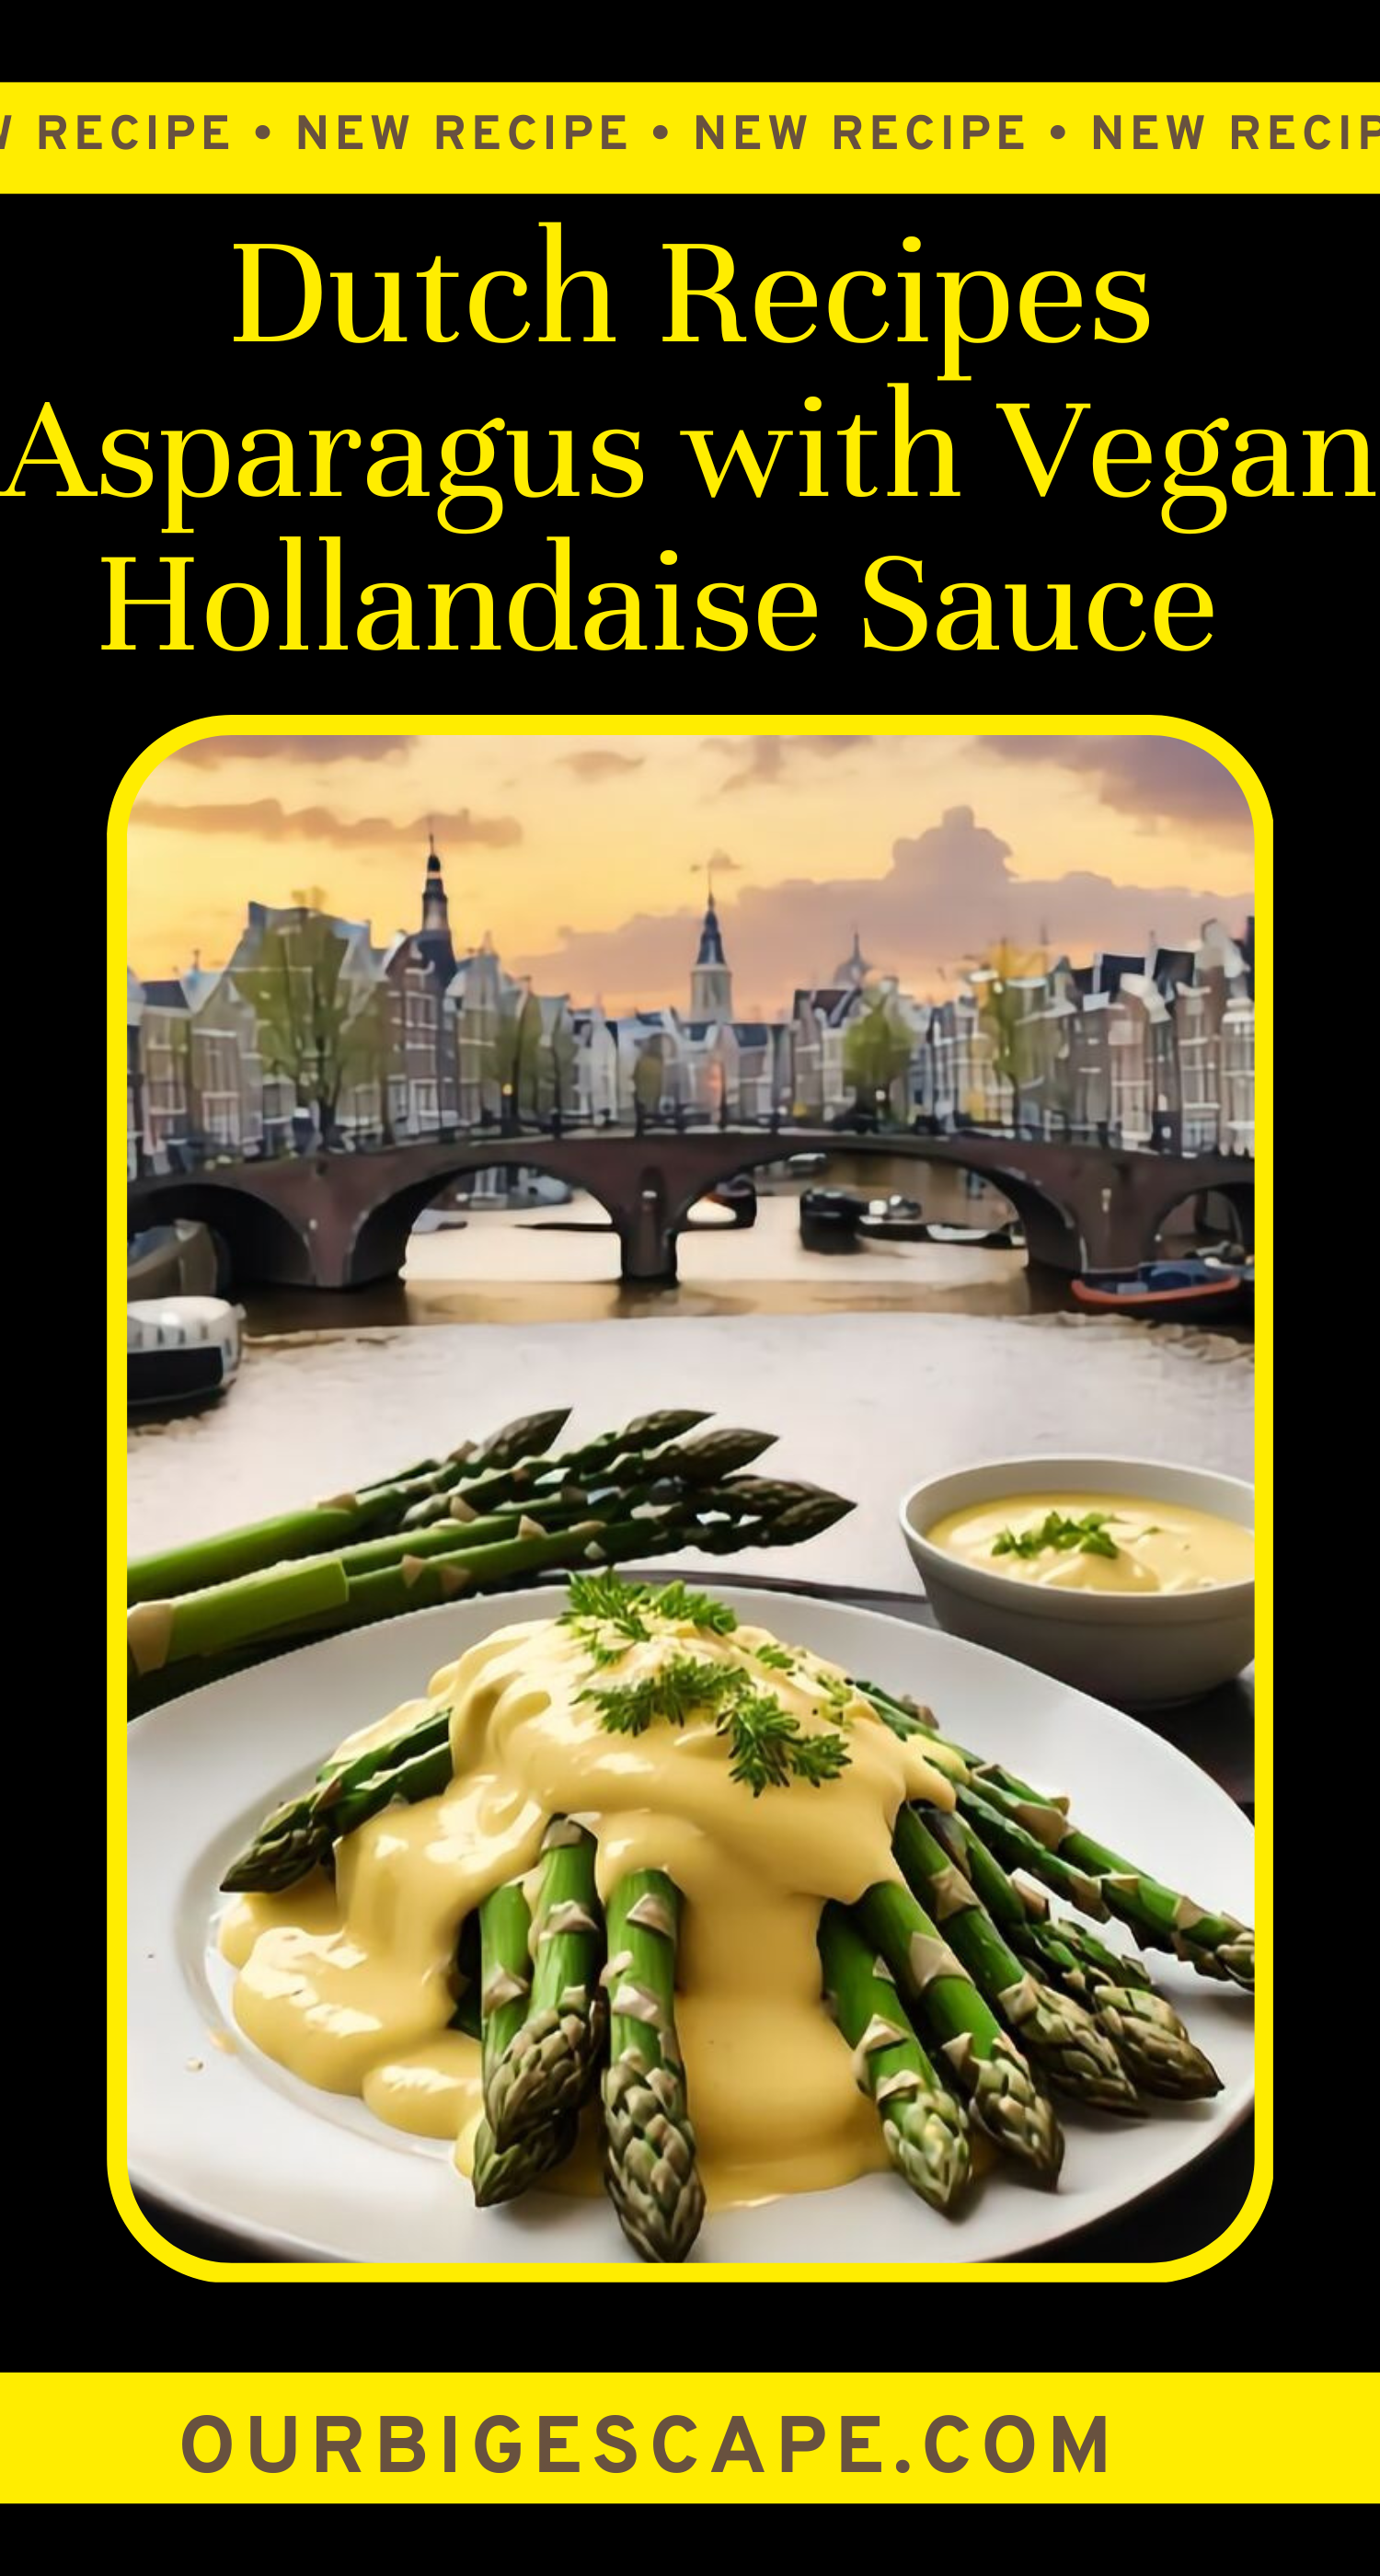 Asparagus with Vegan Hollandaise Sauce